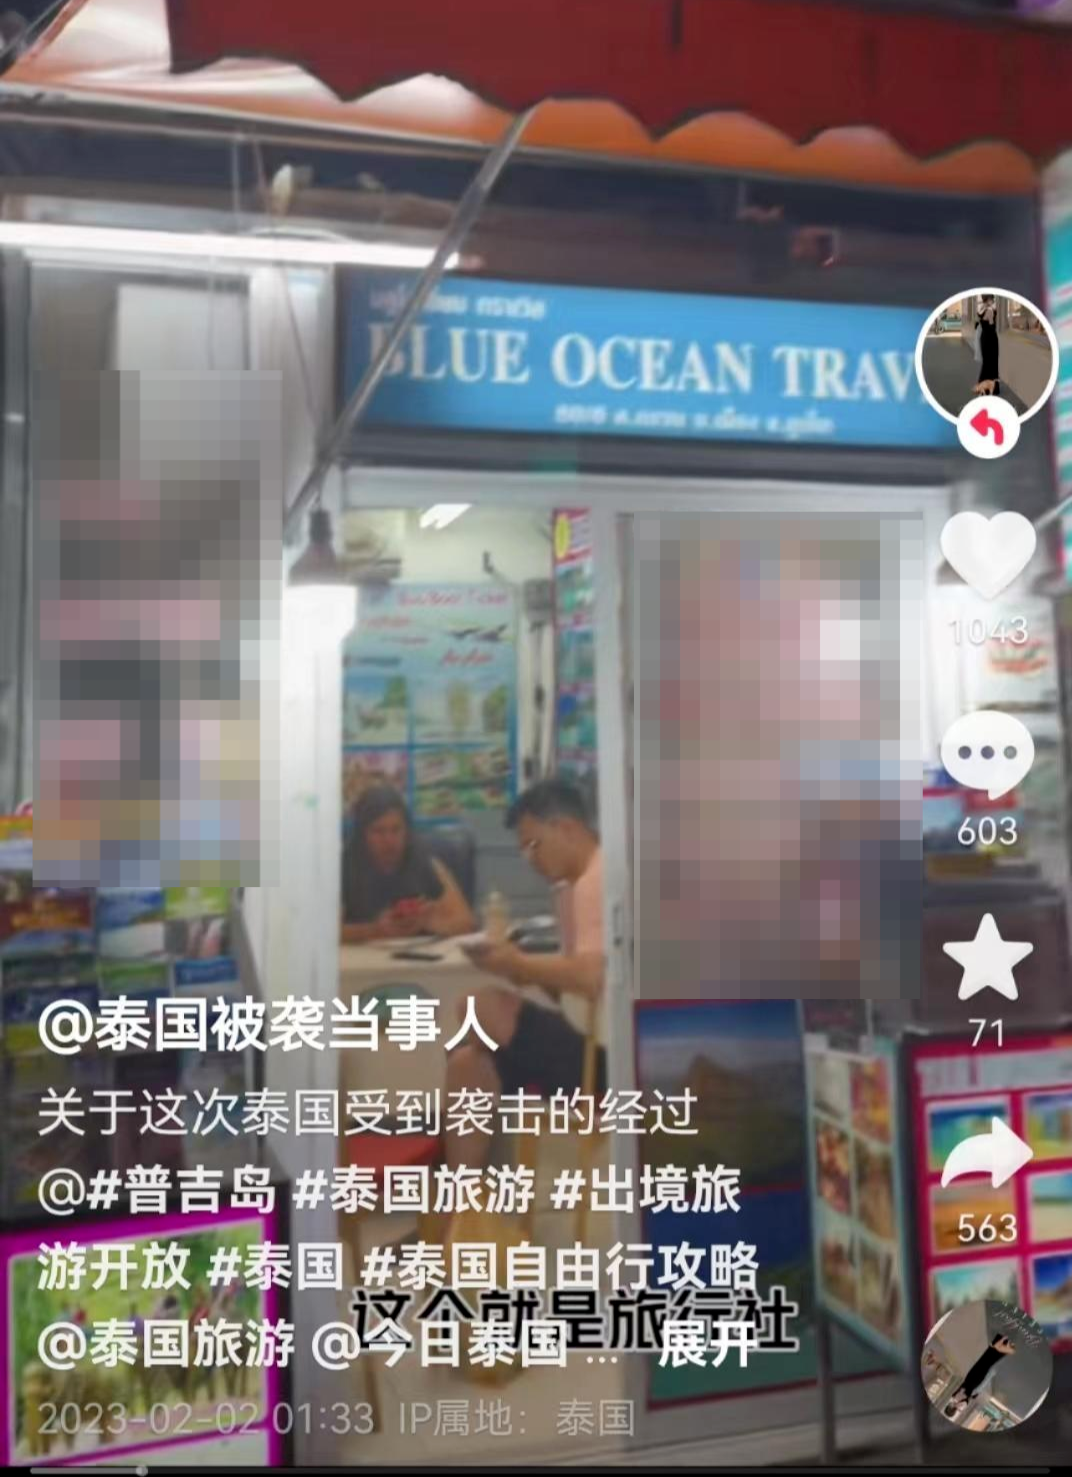 旅行社：中国游客在普吉岛旅游遭袭击 中国驻普吉领事办公室涉事旅行社已被吊销执照并罚款